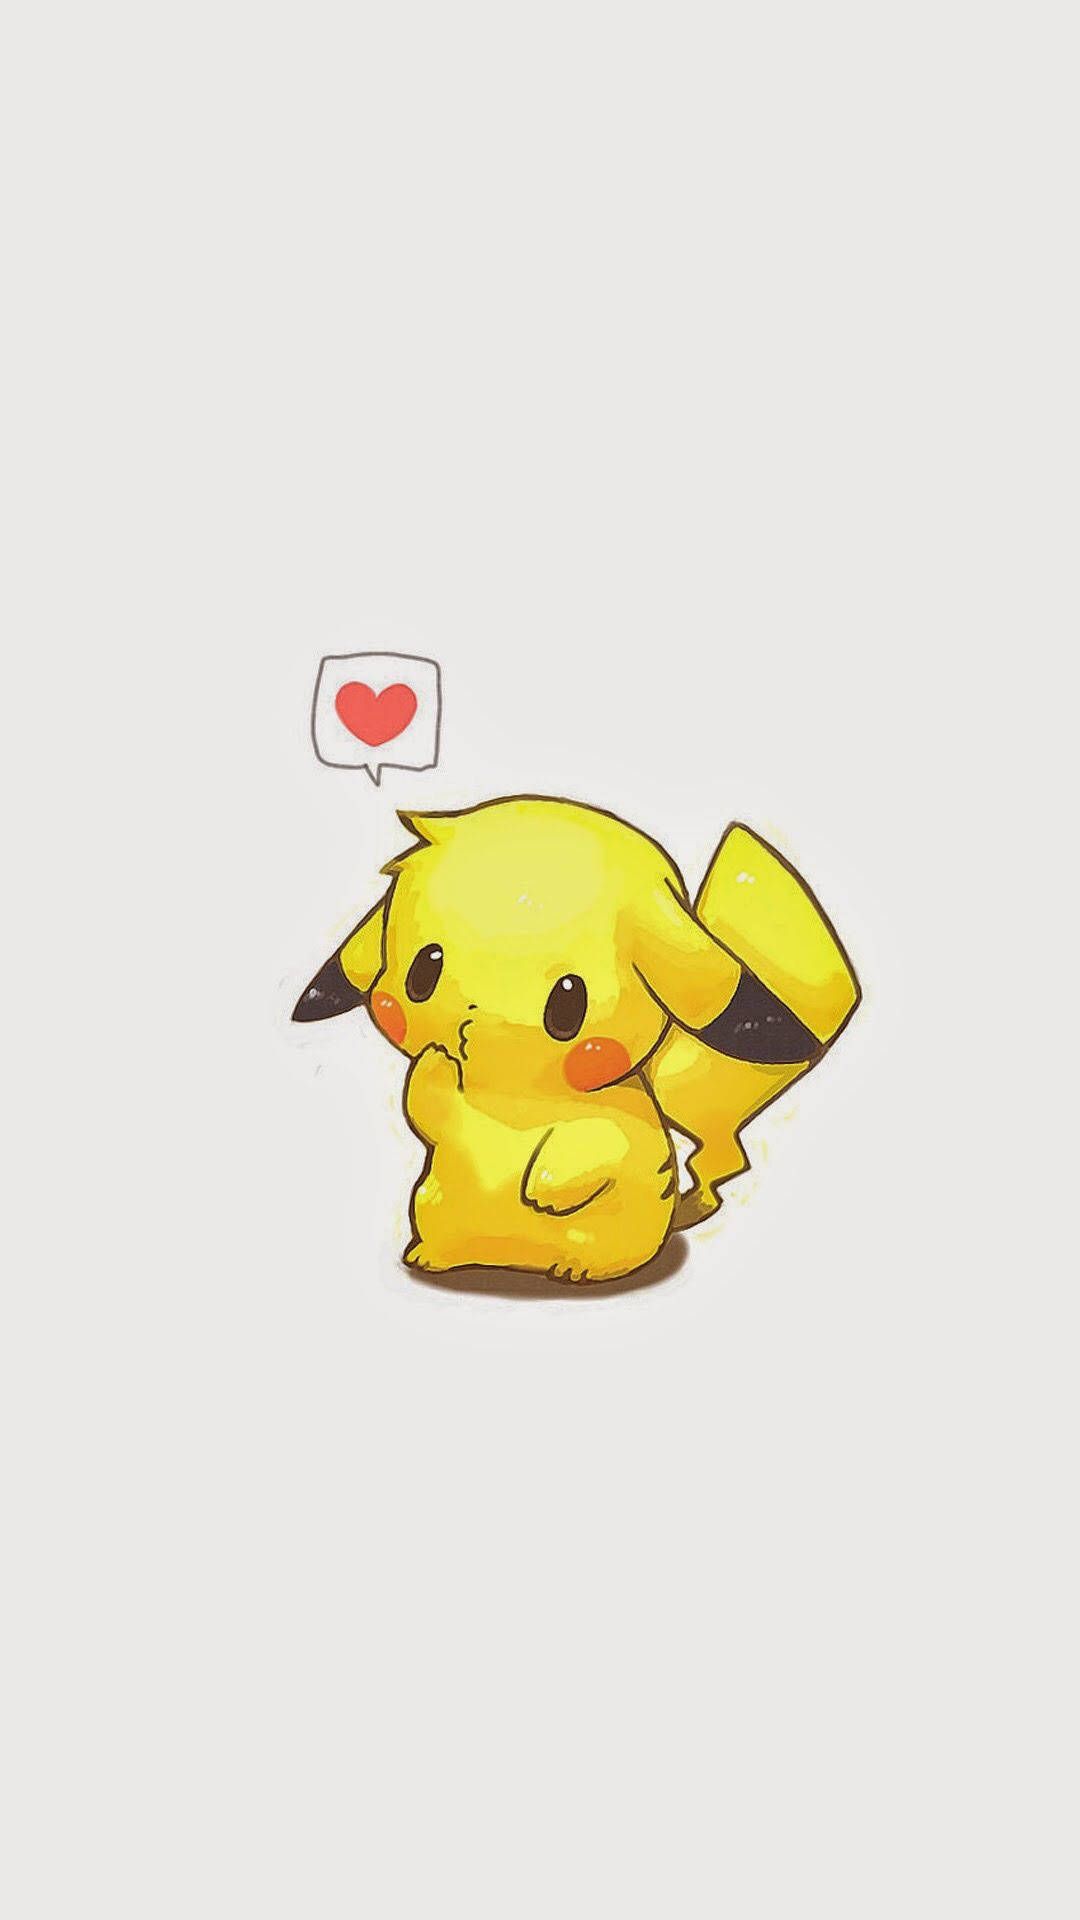 Download Pikachu Cute Image Wallpaper